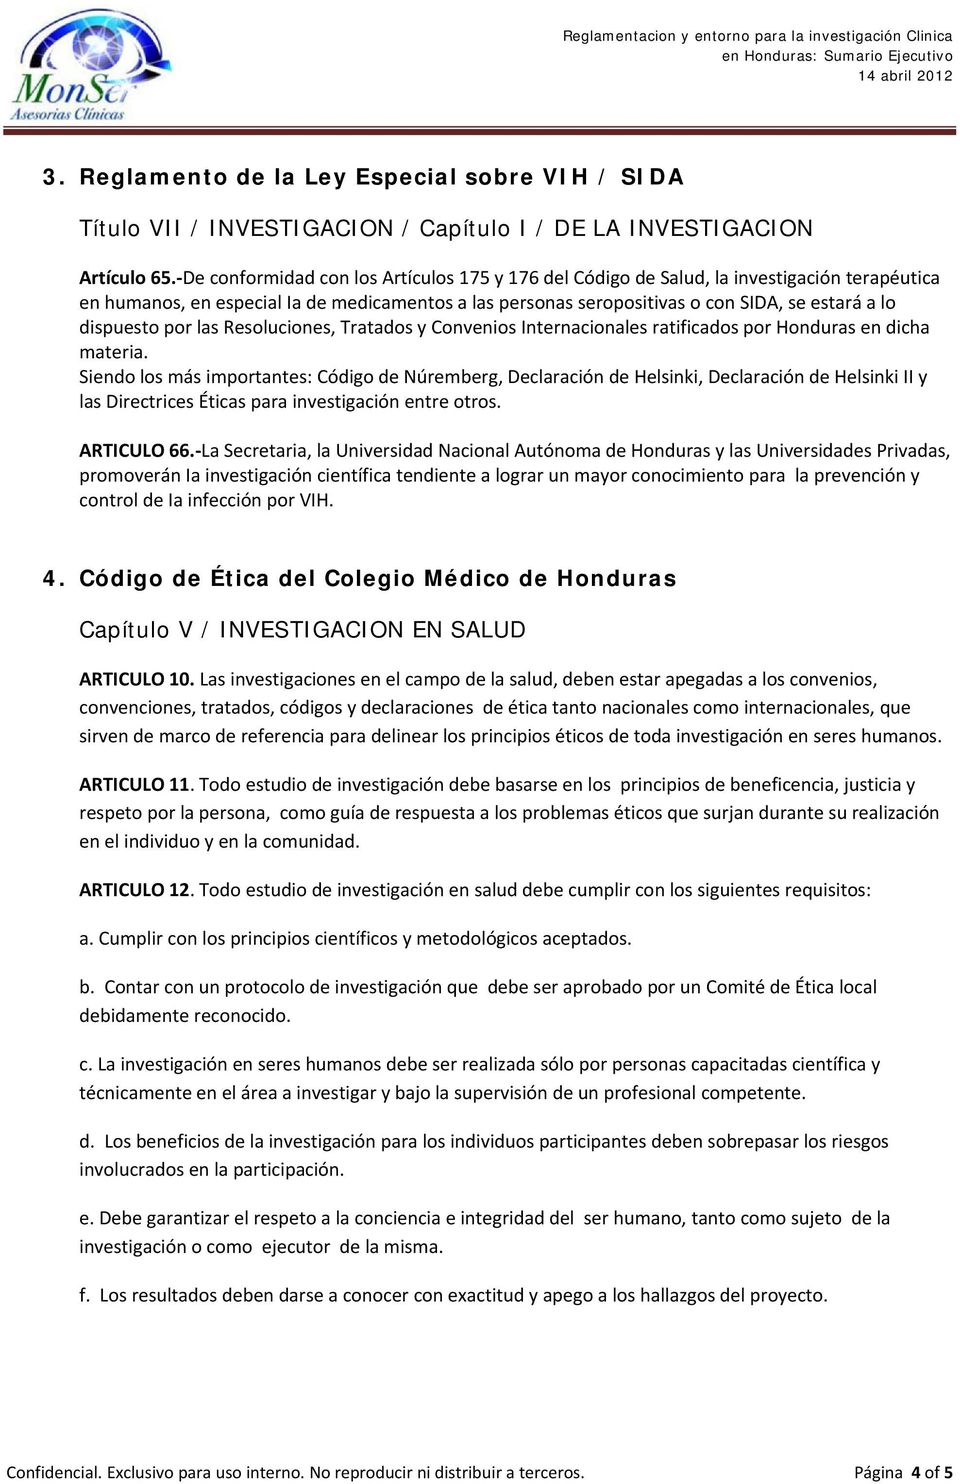 dispuesto por las Resoluciones, Tratados y Convenios Internacionales ratificados por Honduras en dicha materia.